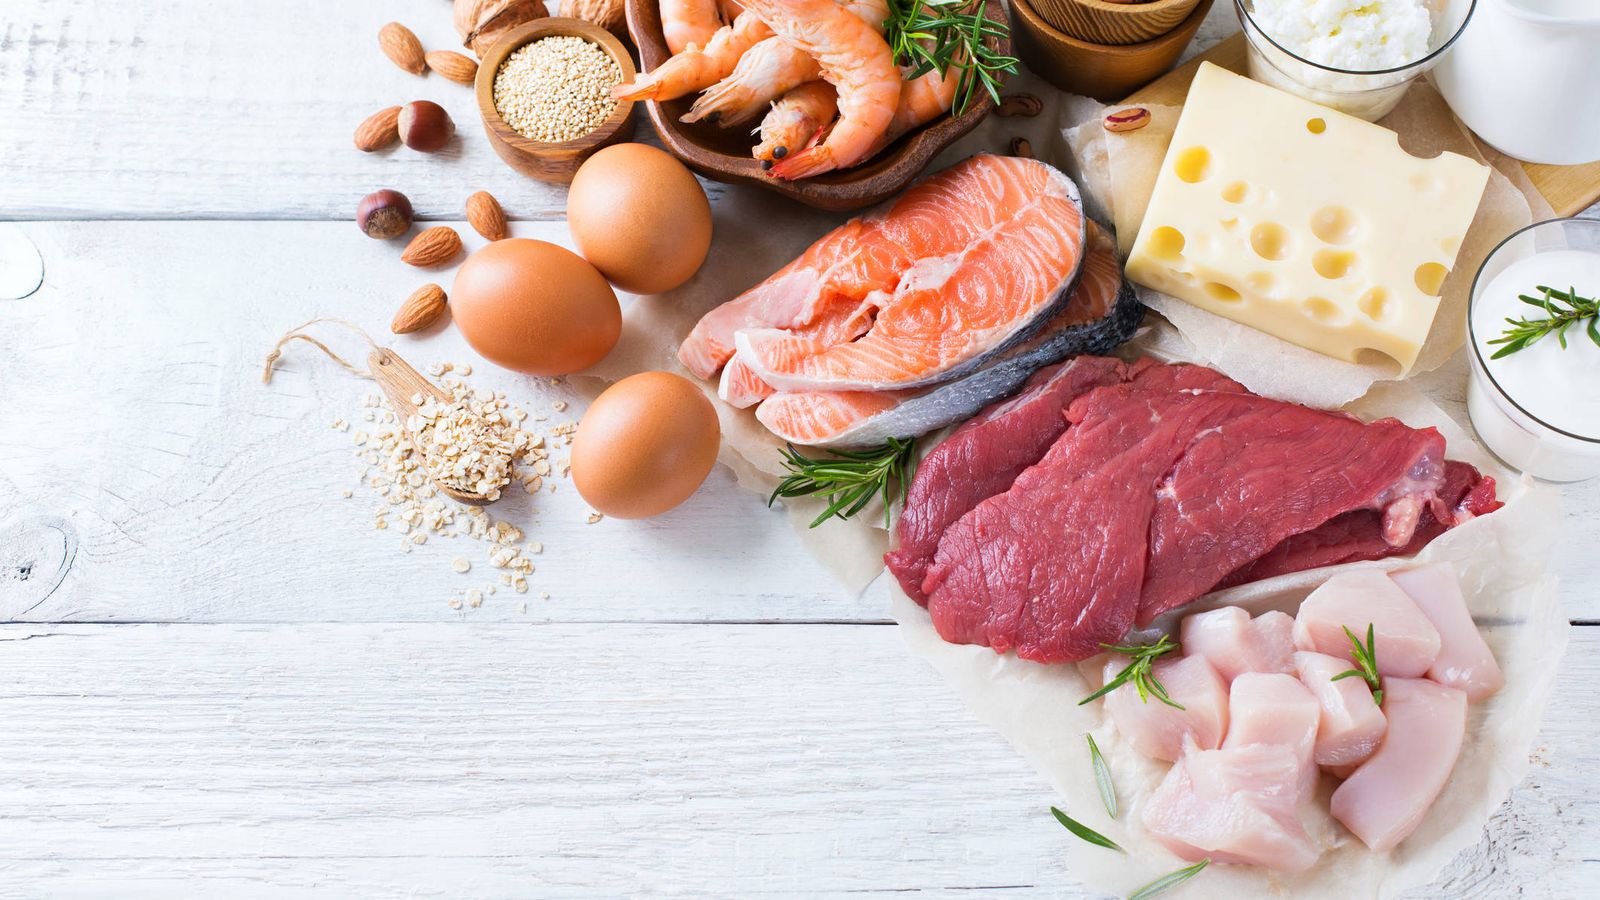 Foto: Más quesos, pescados y mariscos y menos carnes, recomendación de la Fundación Australiana del Corazón (Foto: iStock)